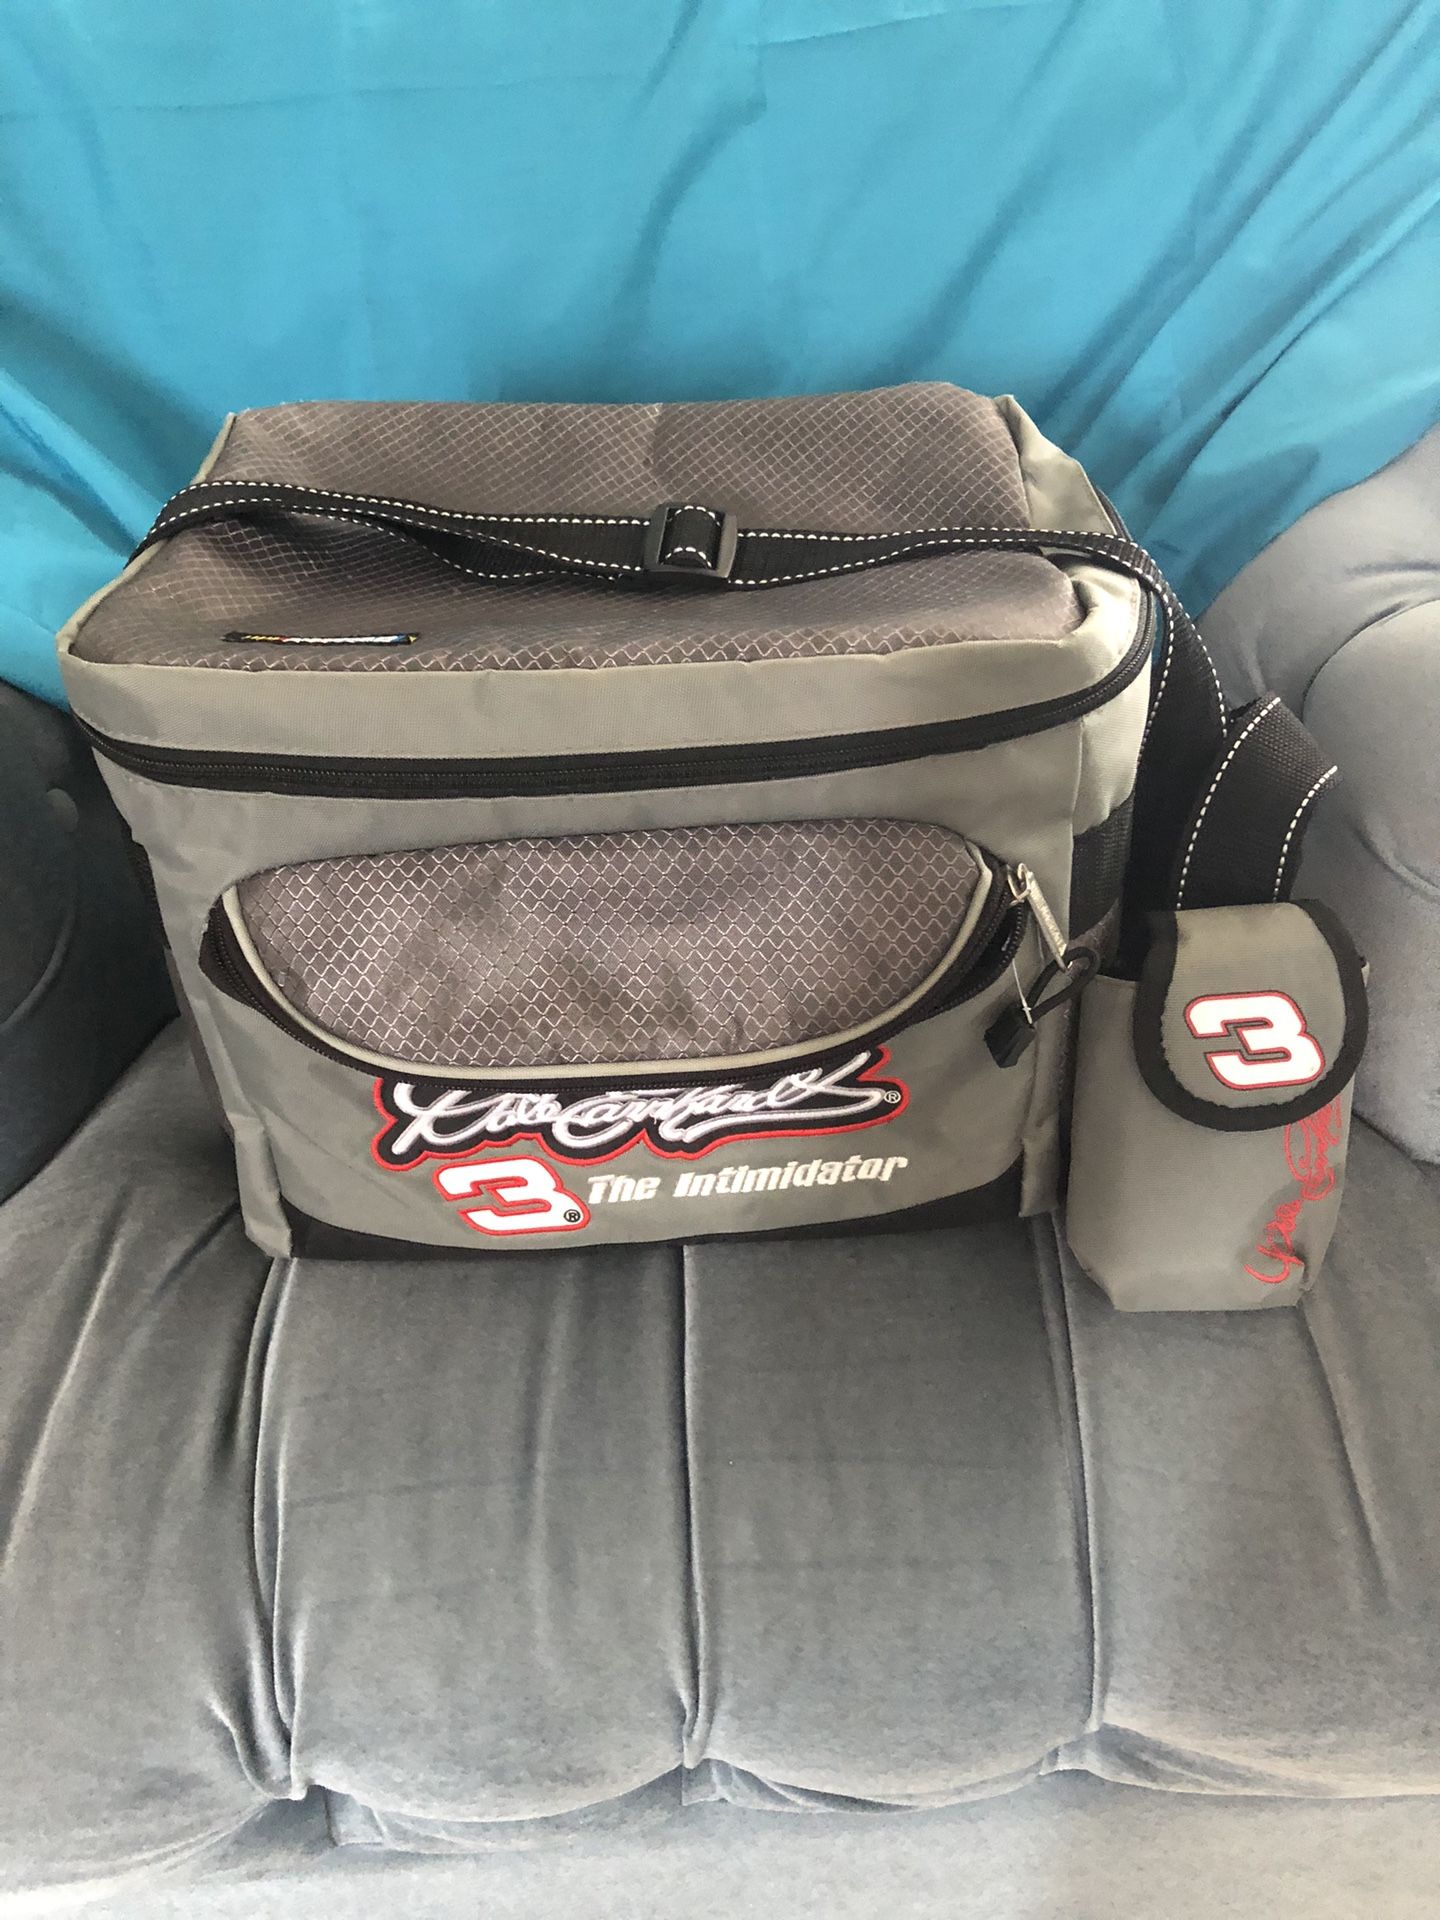 Dale Earnhardt NASCAR Cooler Bag